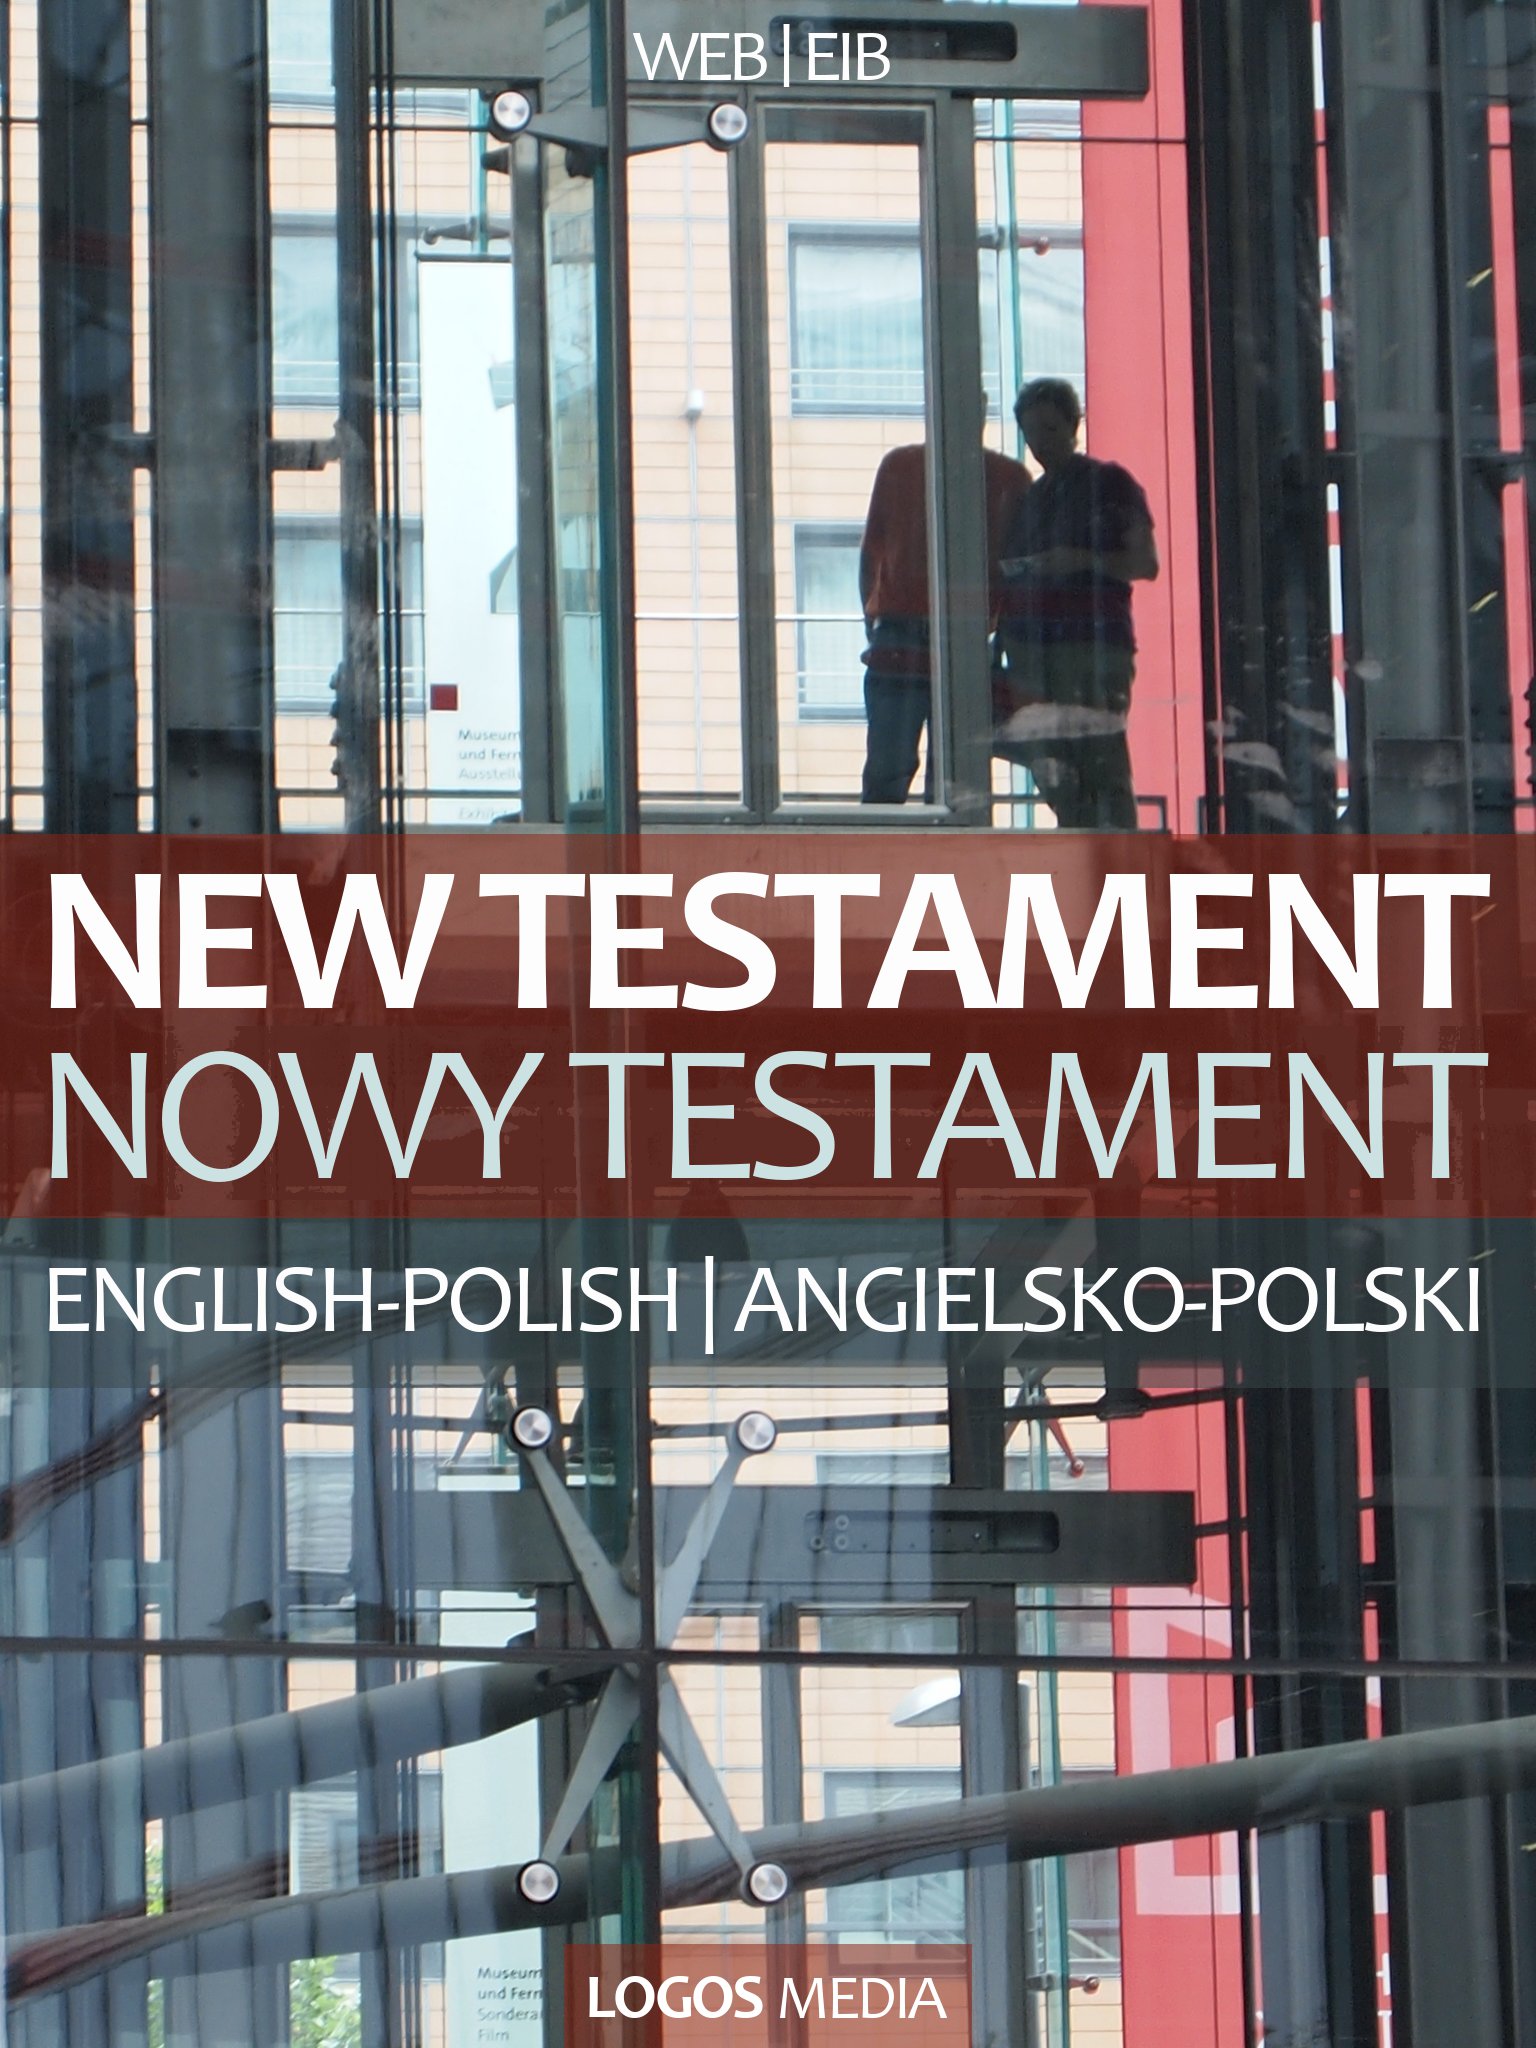 Okładka:New Testament, English-Polish / Nowy Testament, angielsko-polski 